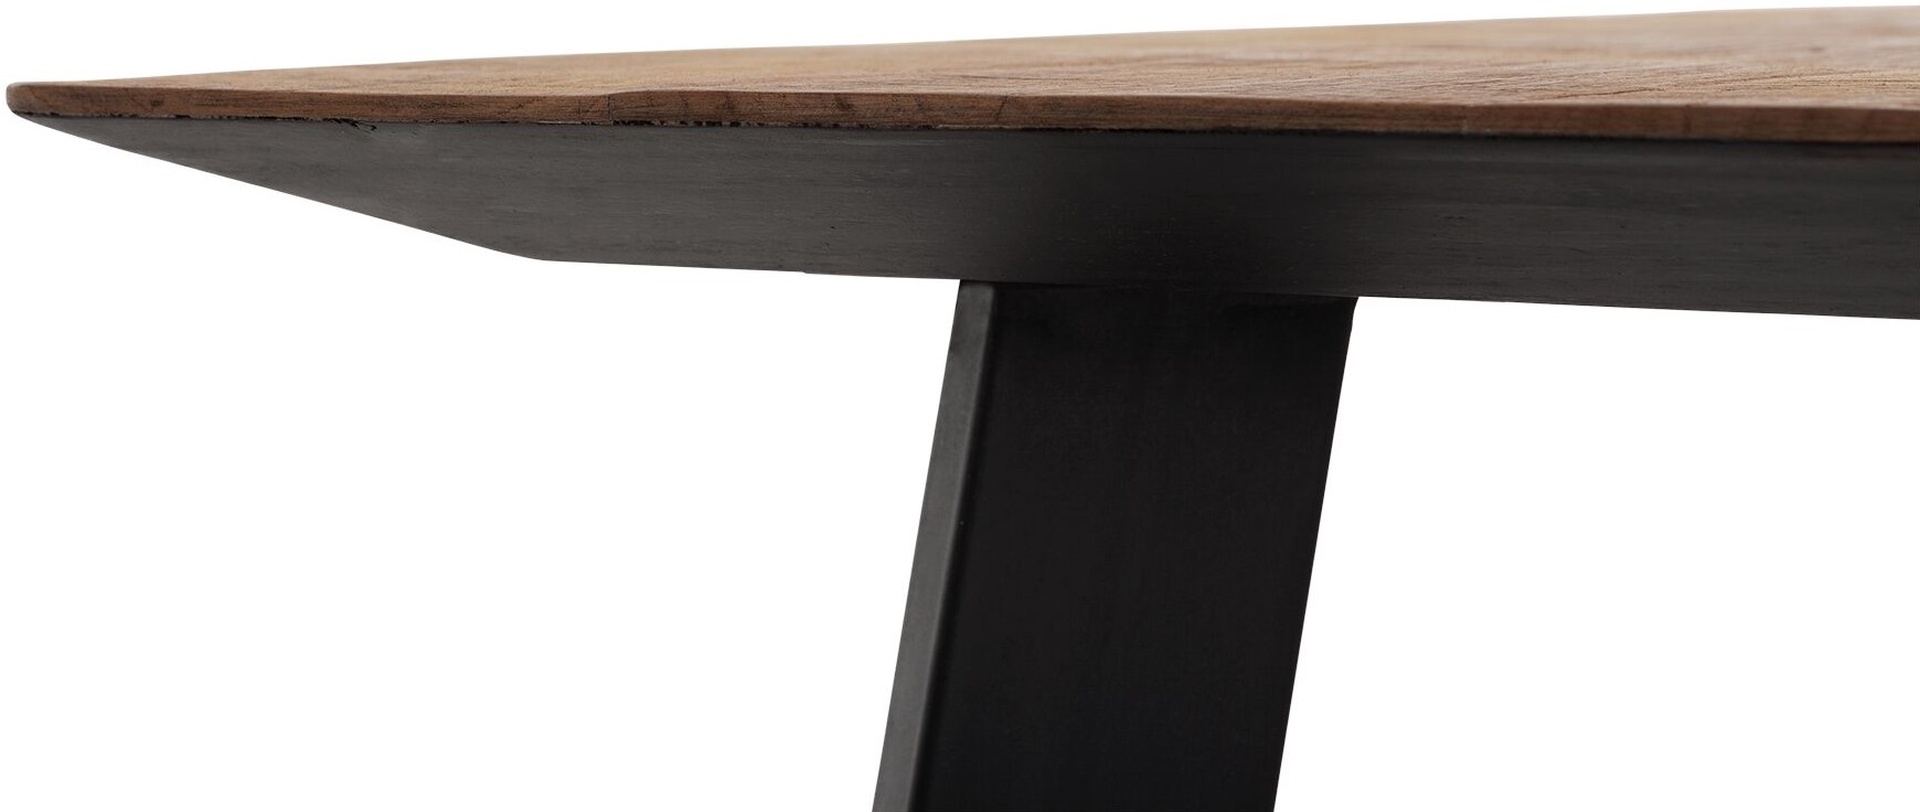 Der Esstisch Shapes überzeugt mit seinem modernem aber auch massivem Design. Gefertigt wurde der Tisch aus recyceltem Teakholz, welches einen natürlichen Farbton besitzt. Das Gestell ist aus Metall und ist Schwarz. Der Tisch hat eine Länge von 200 cm.